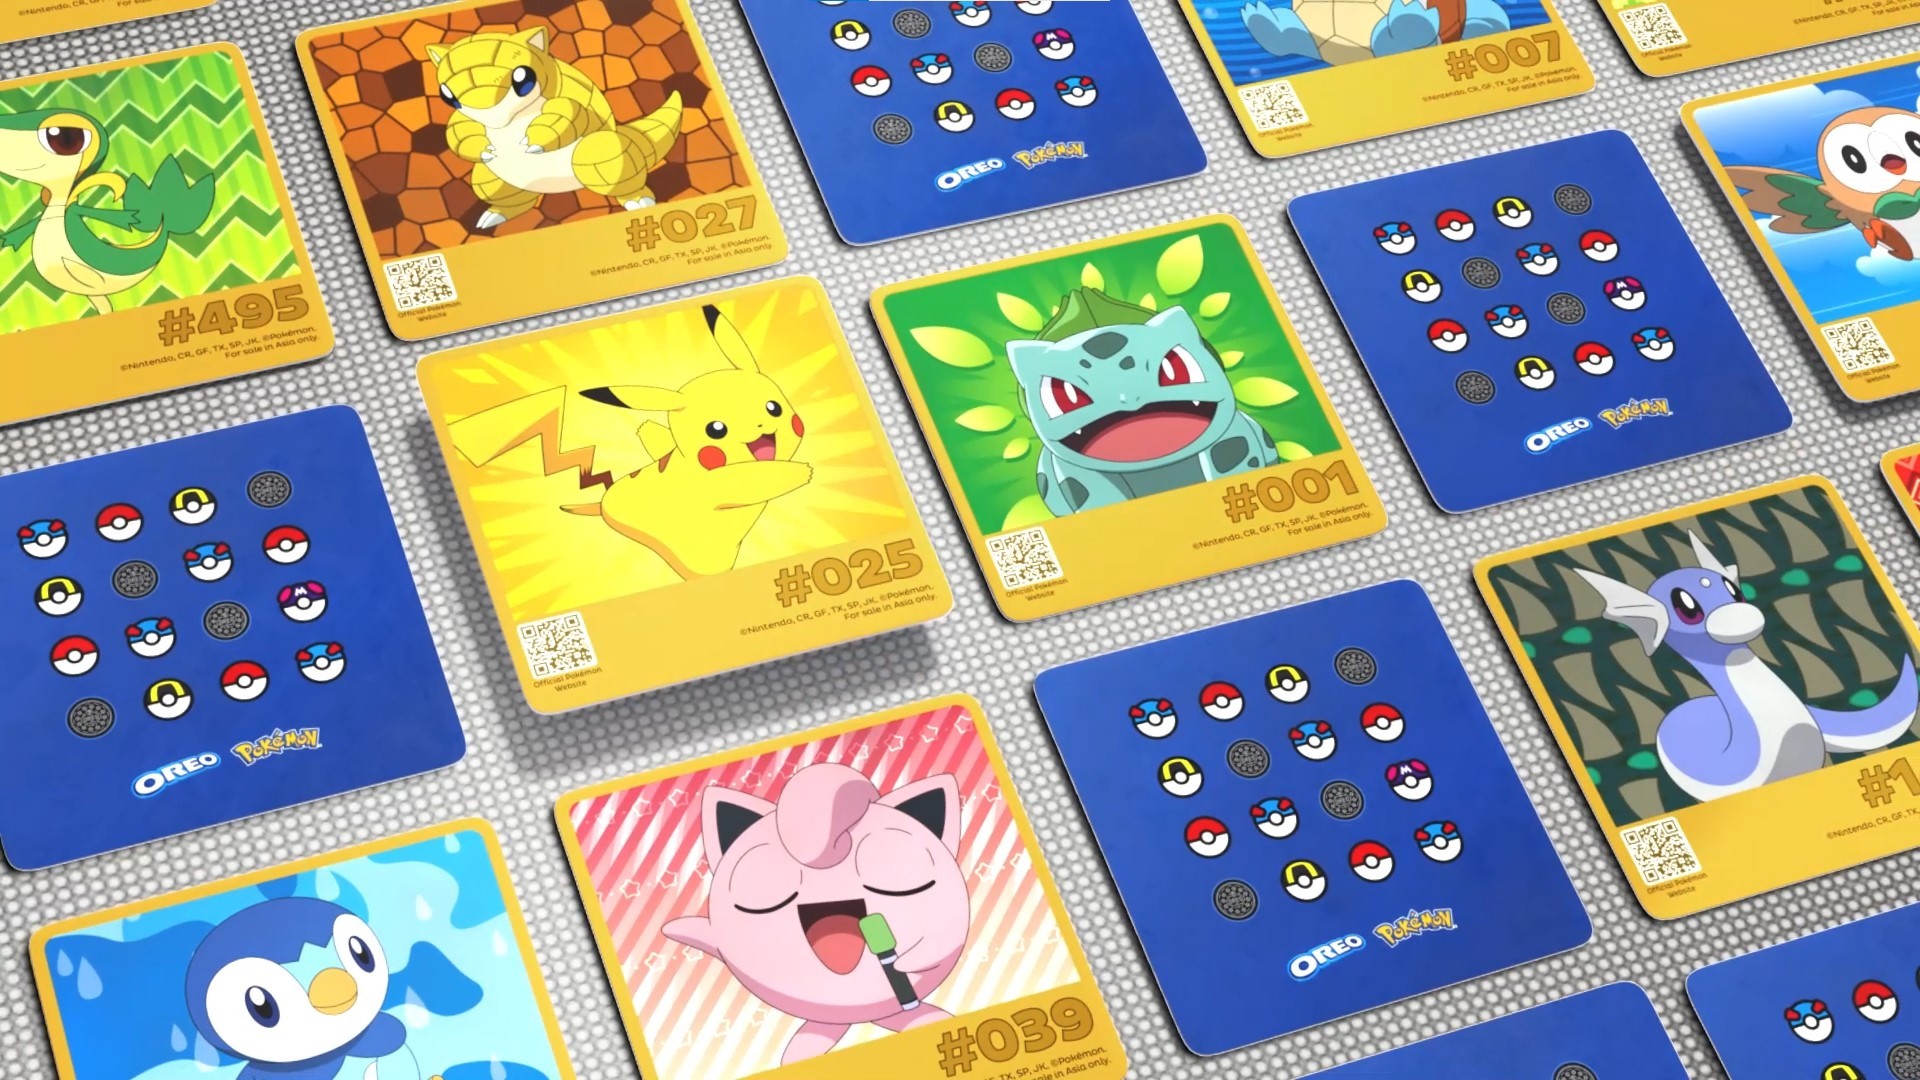 OREO ra mắt bánh quy phiên bản đặc biệt có hương vị lấy cảm hứng từ Pikachu - ảnh 3